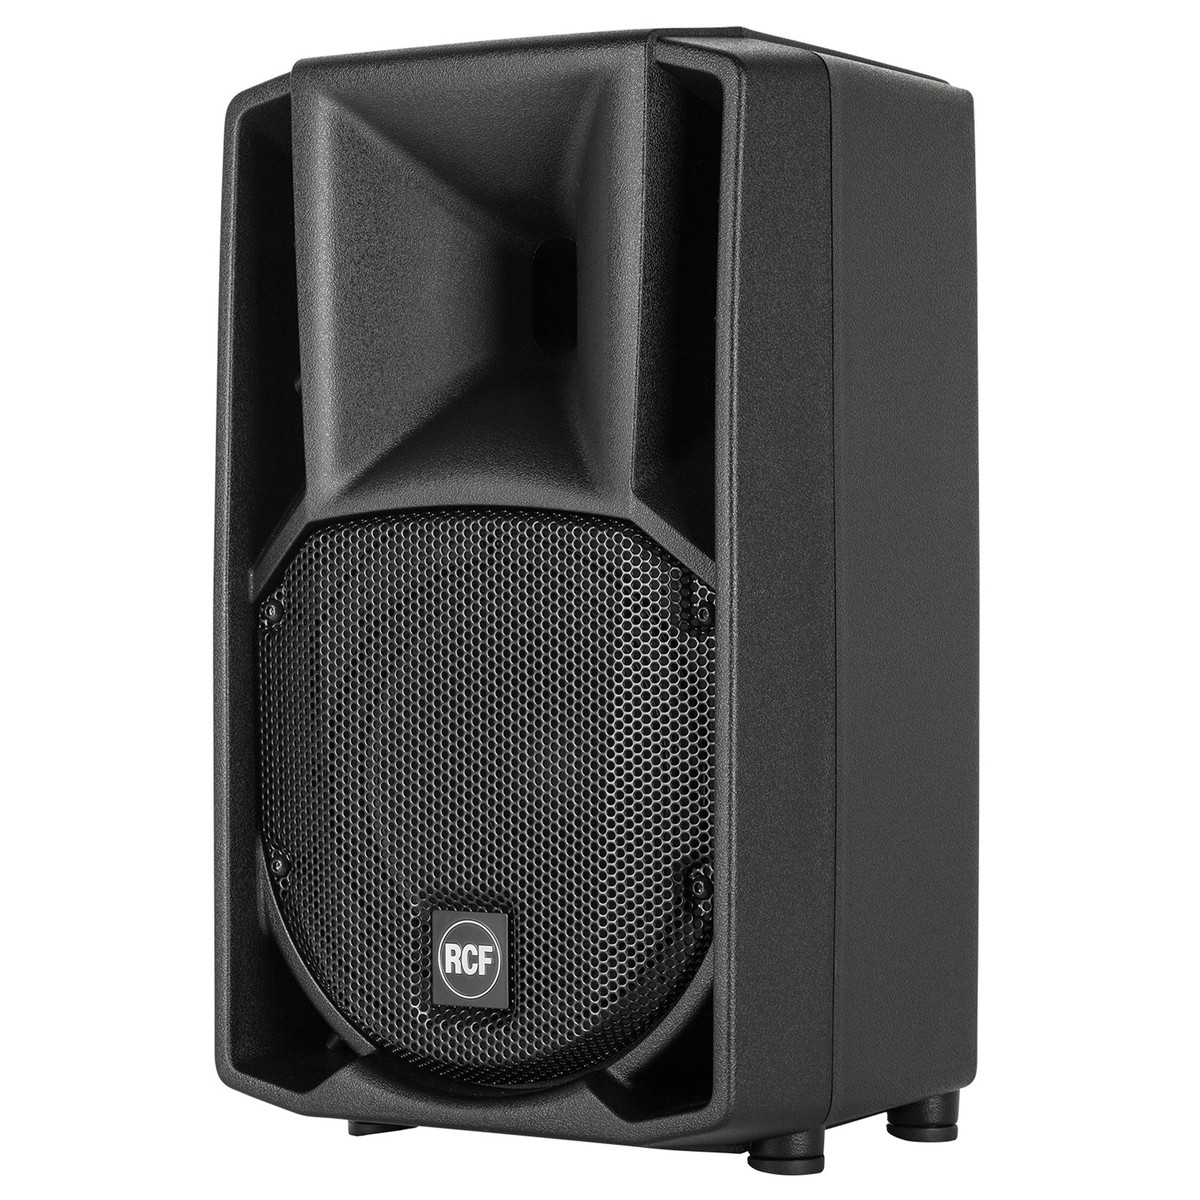 RCF ART 712-A MK4 Active Speaker